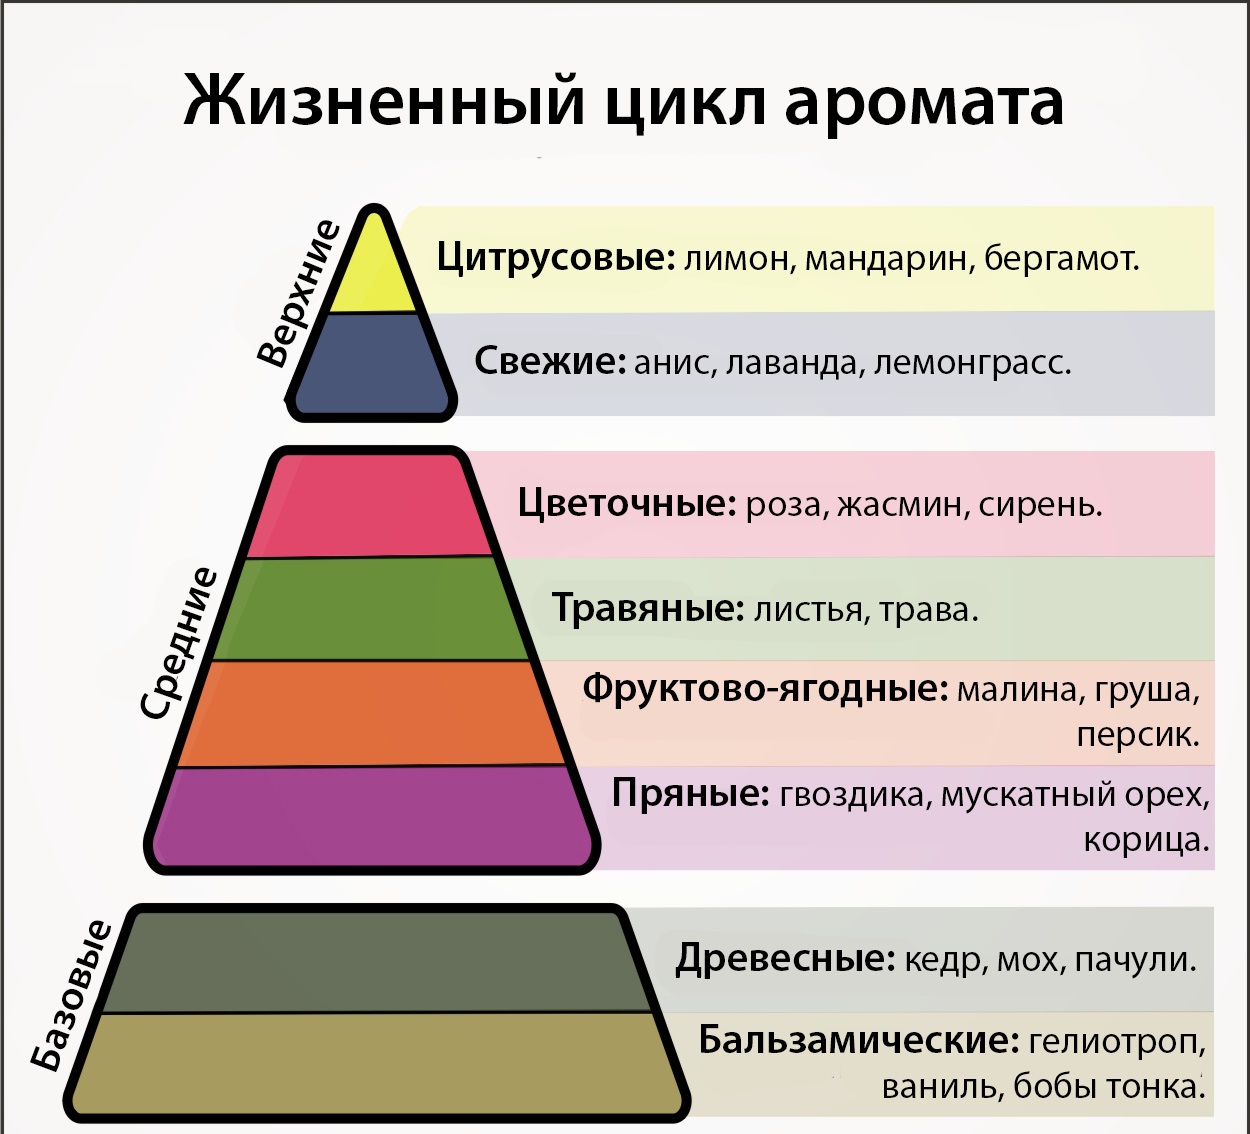 Ольфакторная пирамида аромата. Ольфакторная пирамида эфирных масел. Пирамида нот ароматов. Пирамида парфюмерной композиции.